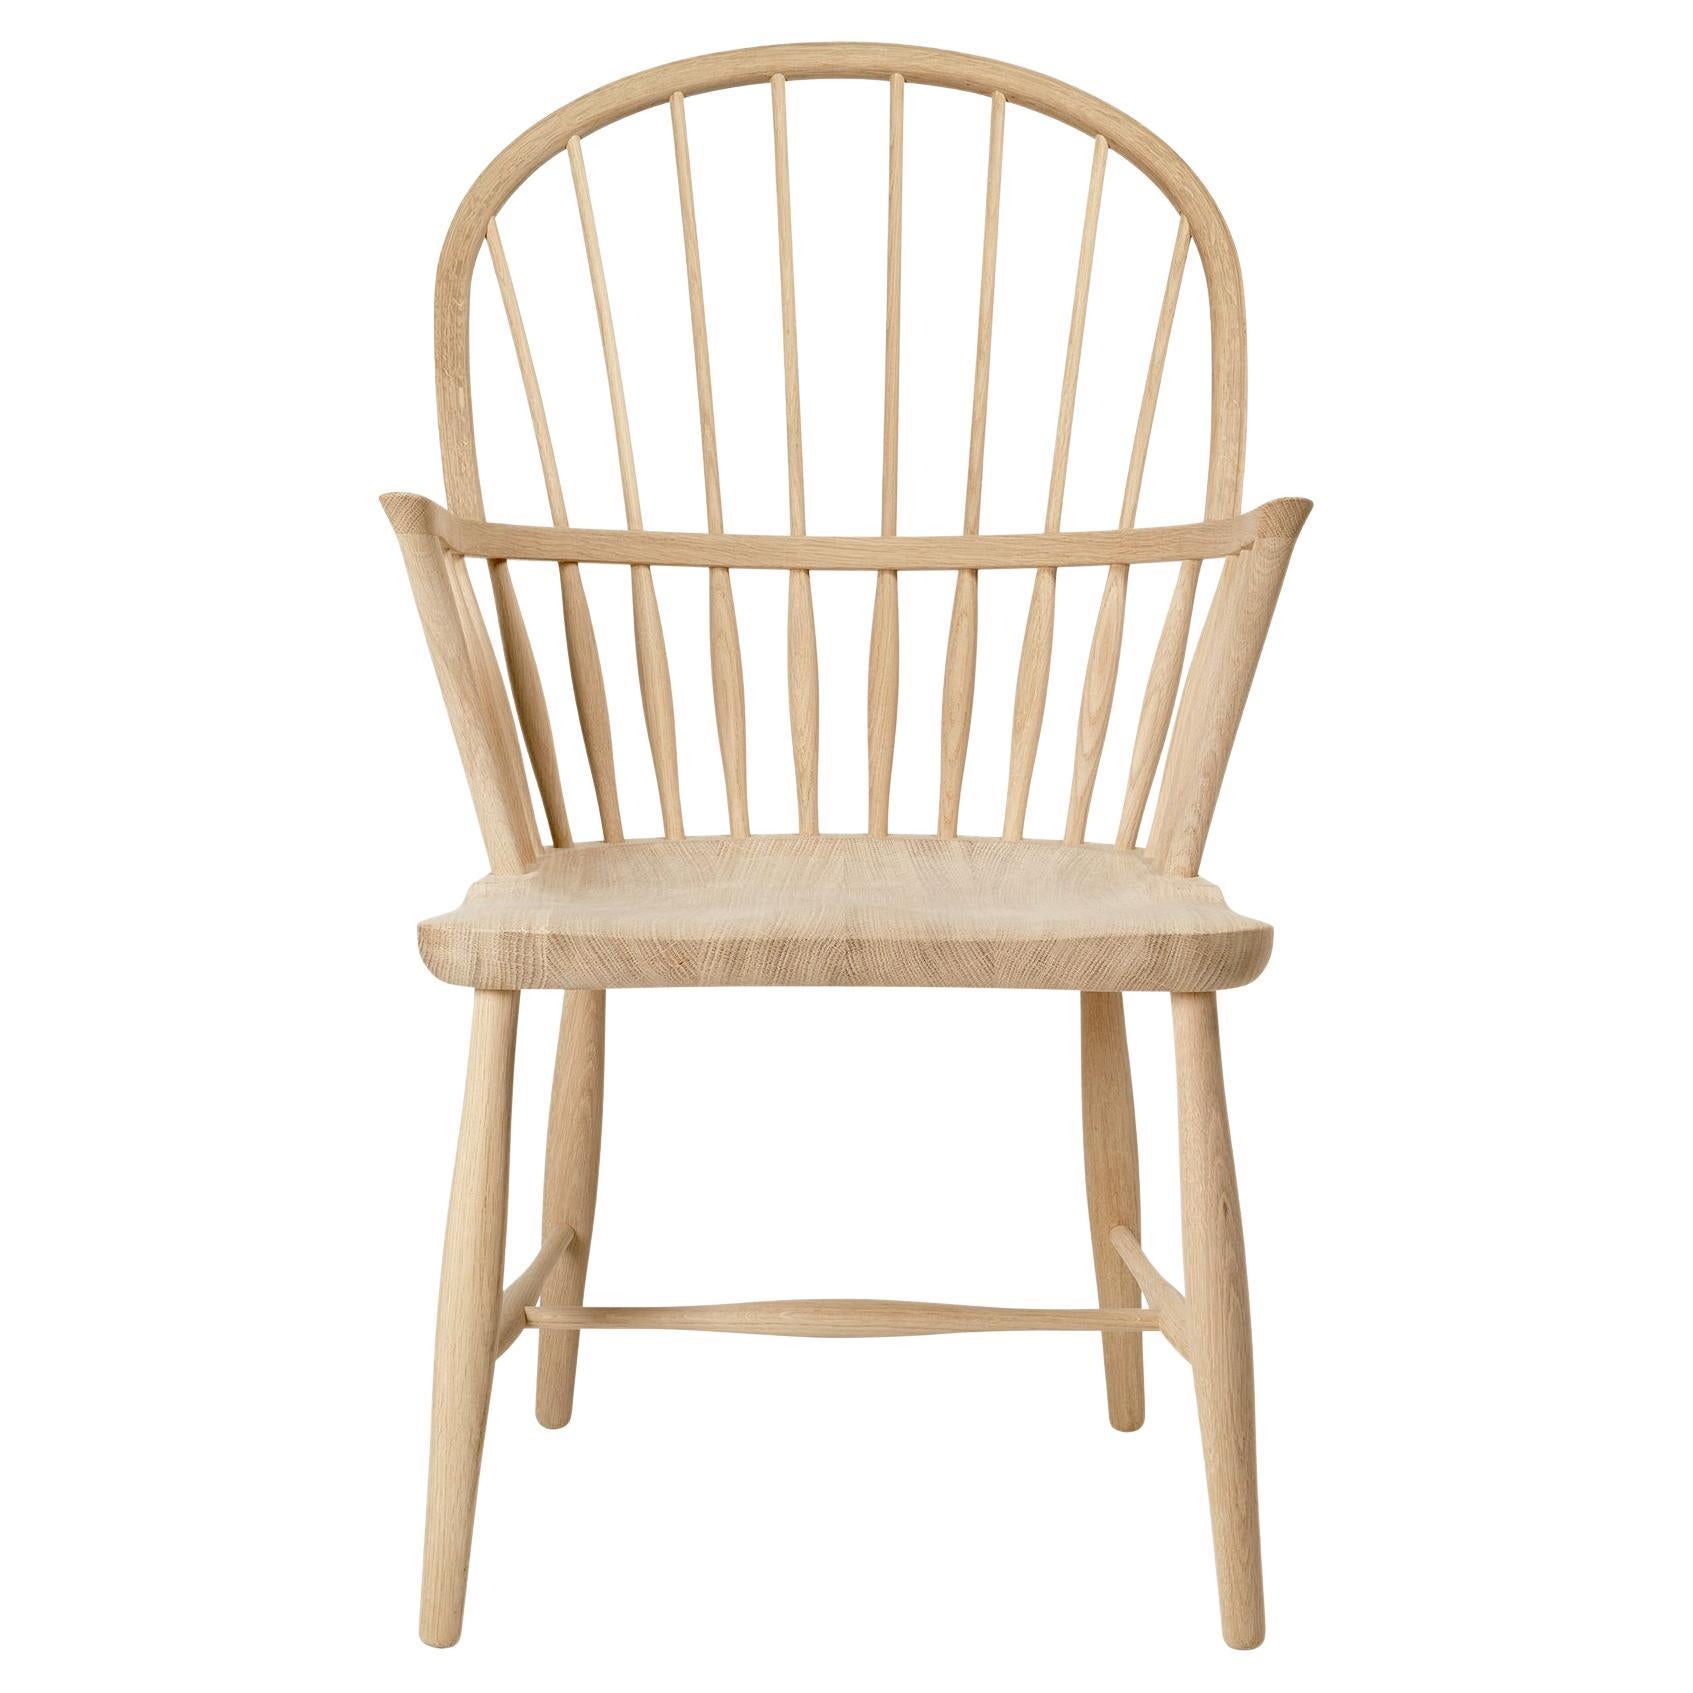 Frits Henningsen 'FH38 Windsor' Chair in Soaped Oak for Carl Hansen & Son For Sale